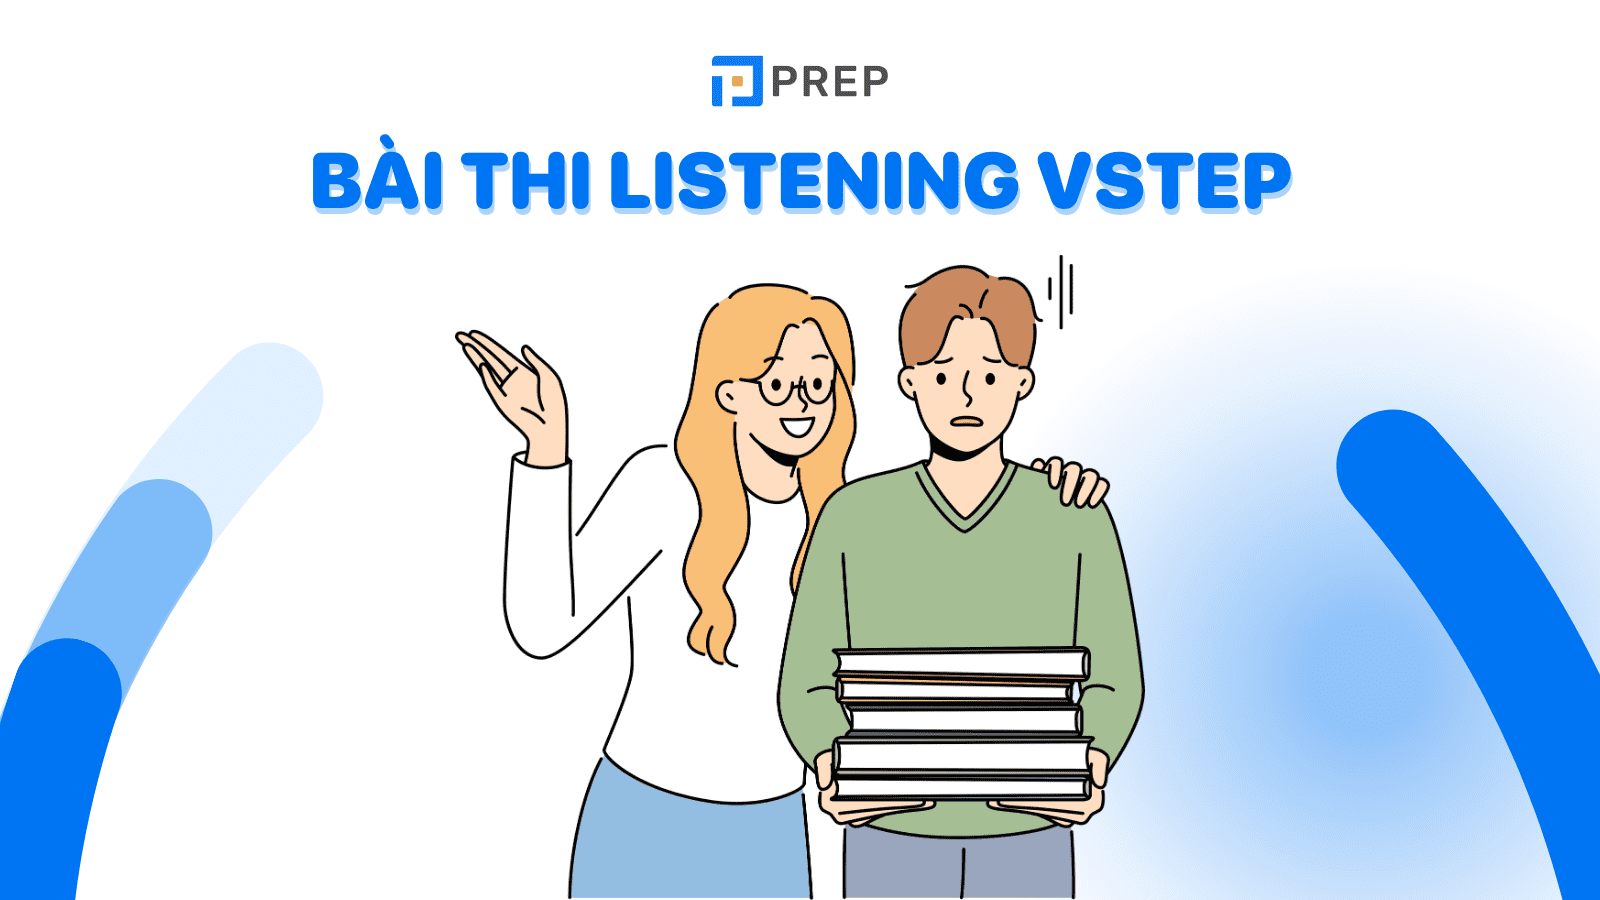 VSTEP Listening là gì? Tổng quan về bài thi Listening VSTEP